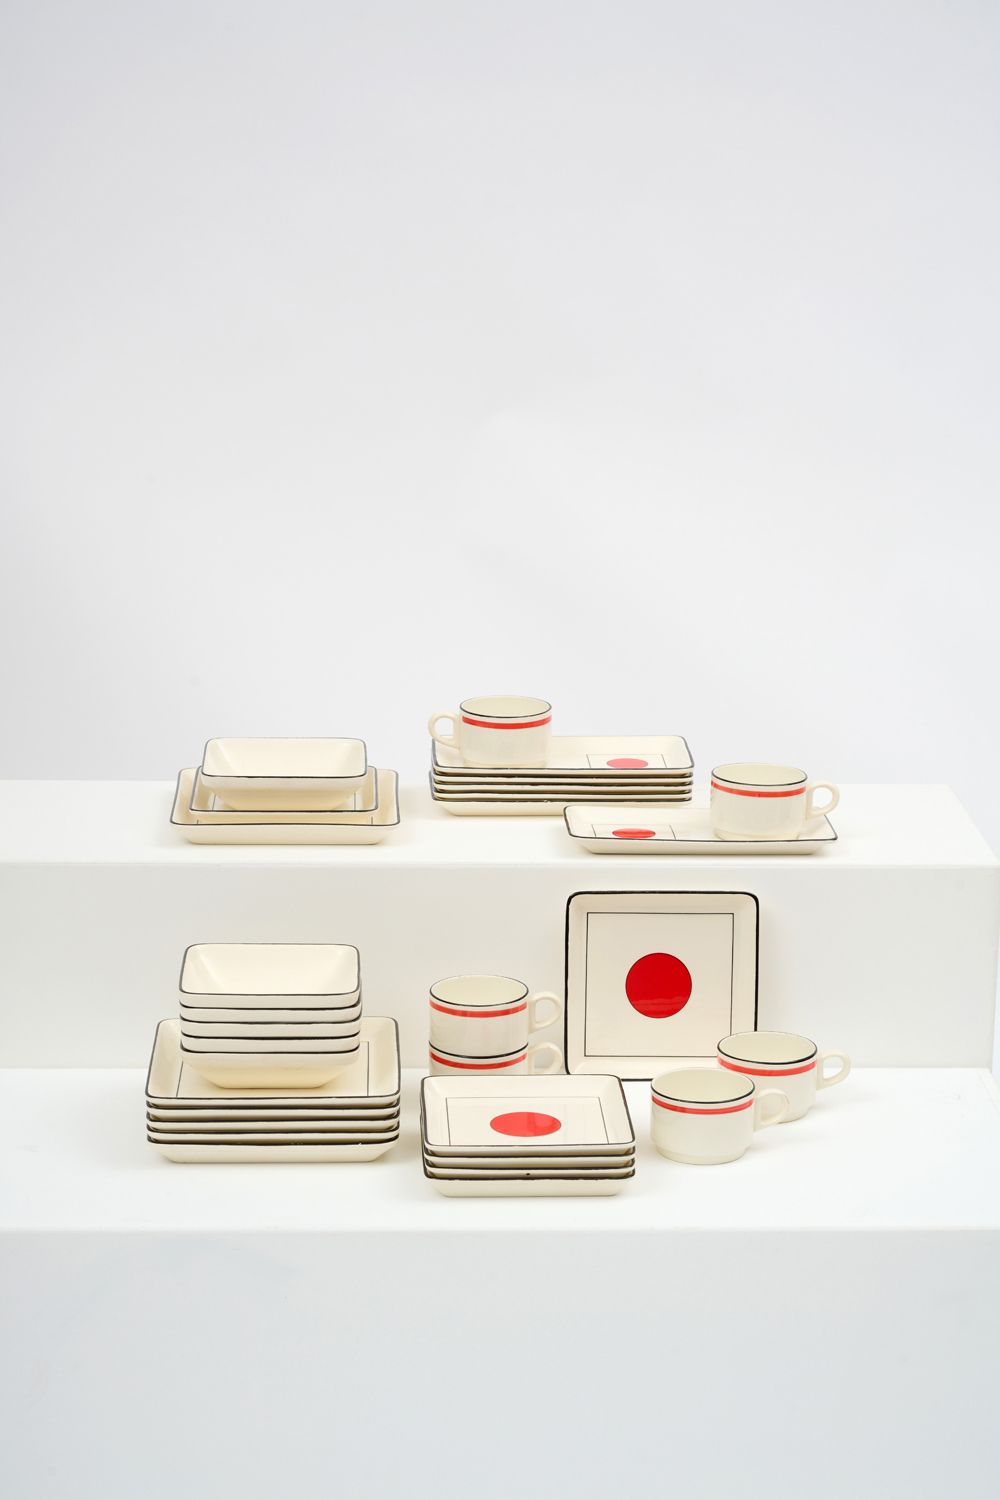 Null 吉恩 
东京 "模型晚餐服务的一部分，奶油色陶器，装饰有黑色鱼片和红色粉彩，包括6个餐盘、6个甜点盘、6个方形碗、6个长方形杯托和6个杯子。 
每件都&hellip;